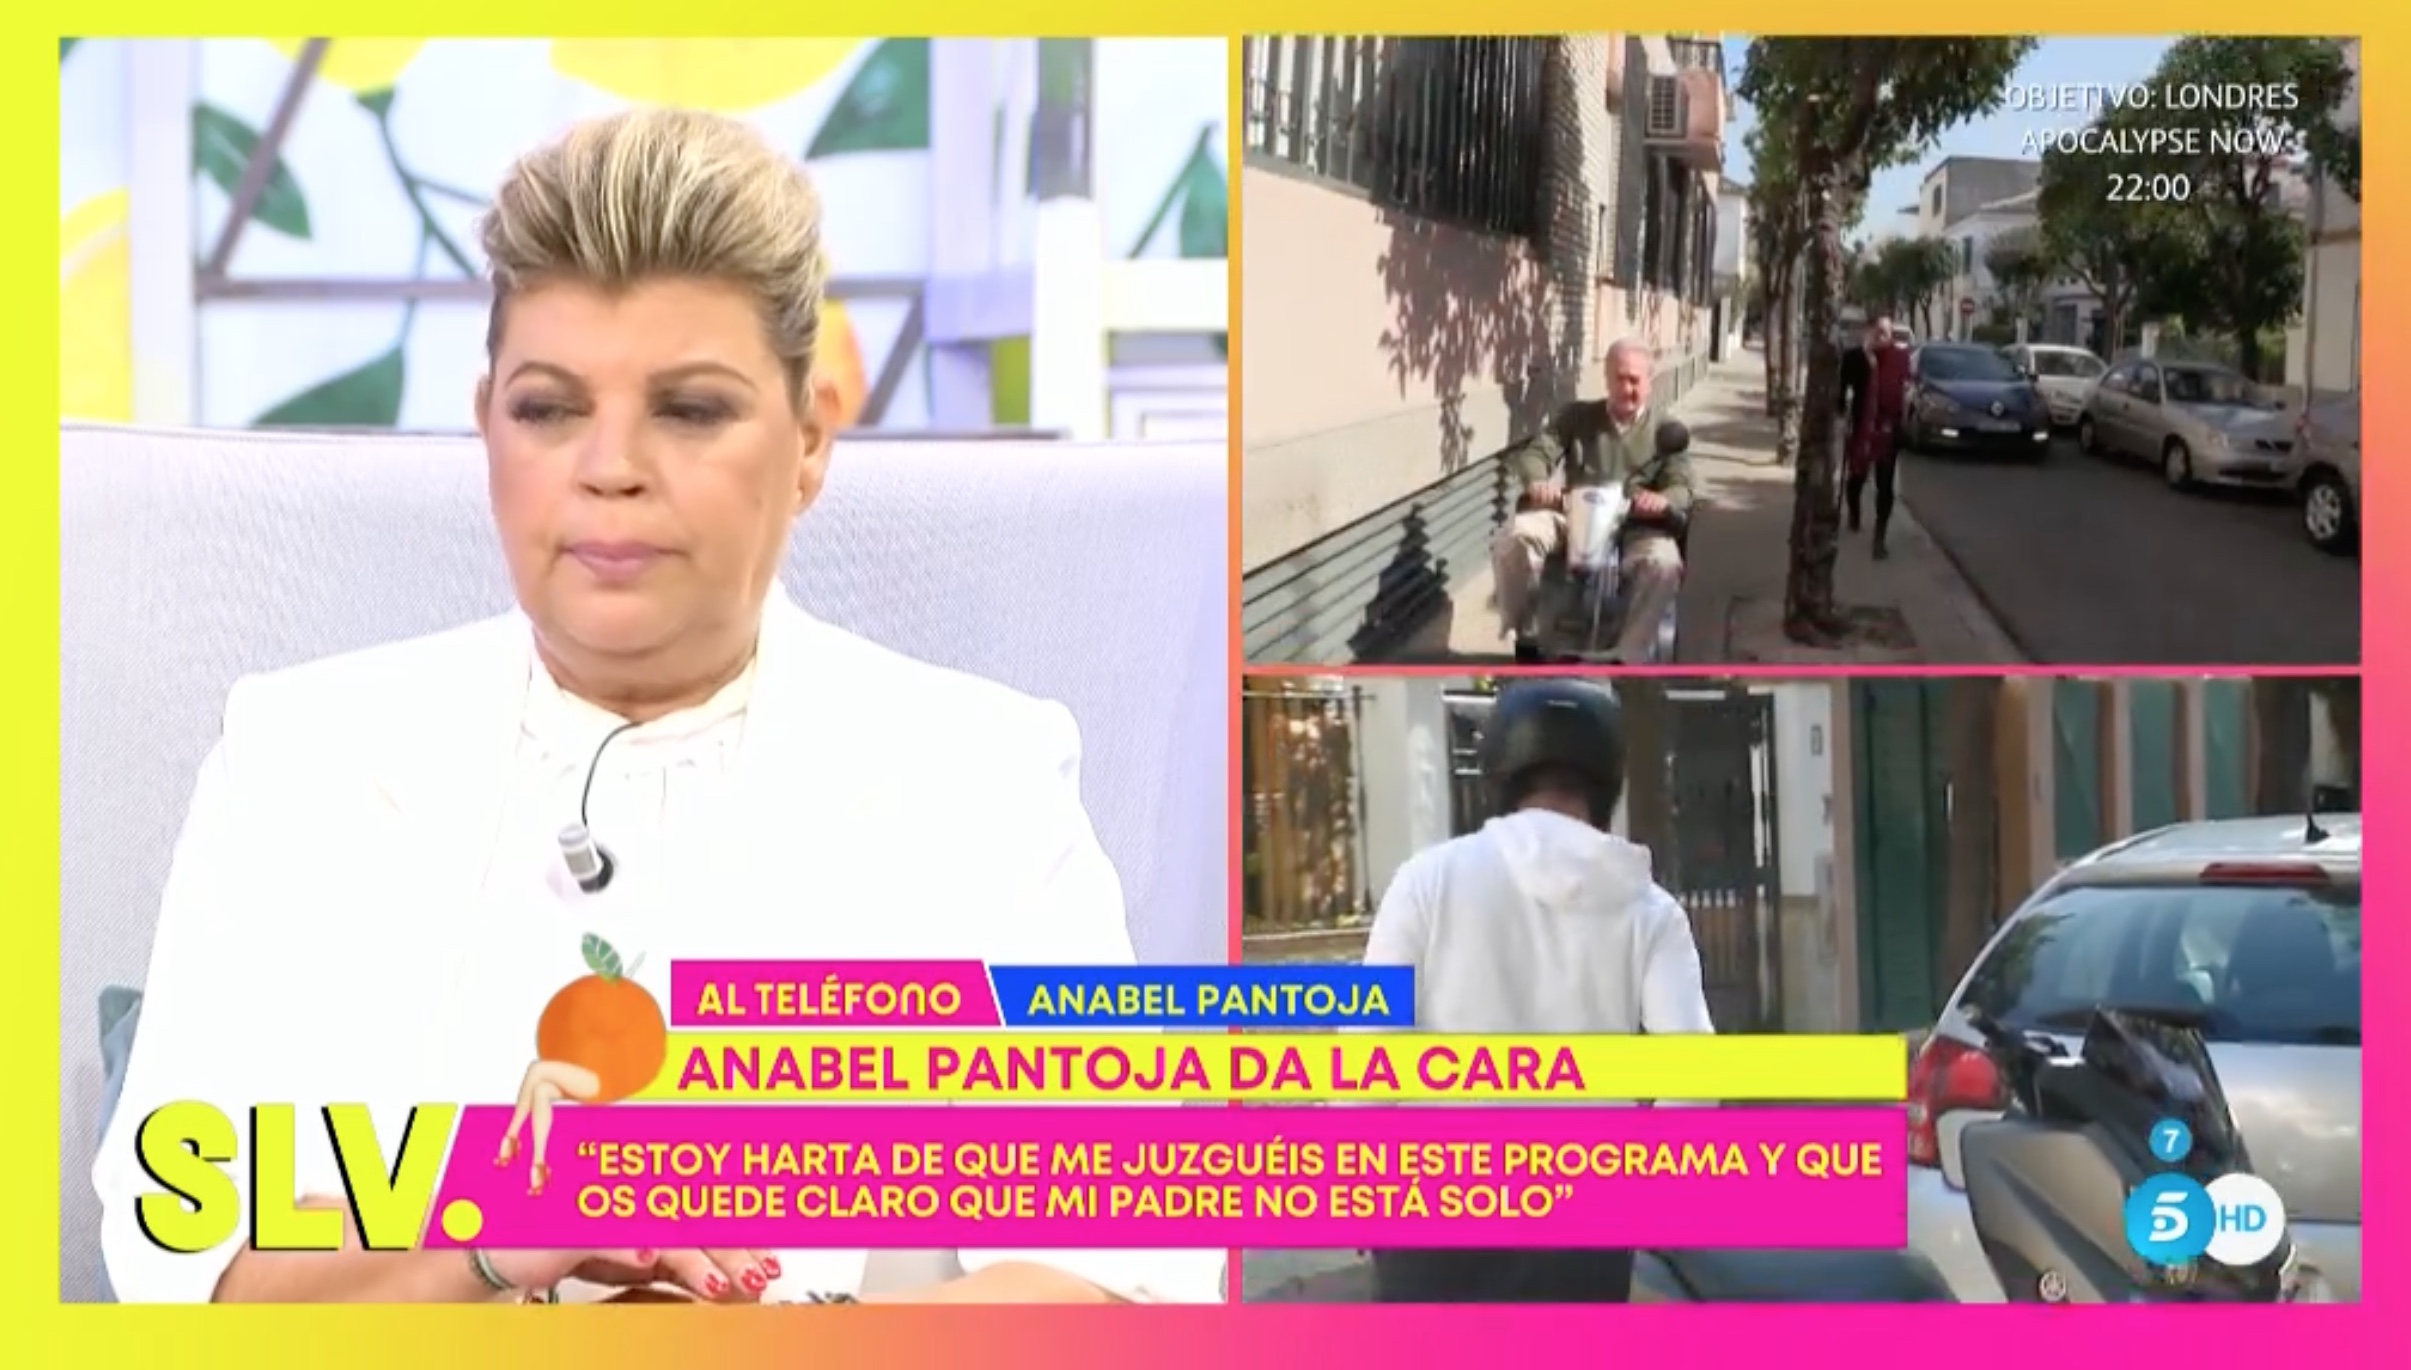 Anabel Pantoja ha llamado en directo a su programa para zanjar la polémica